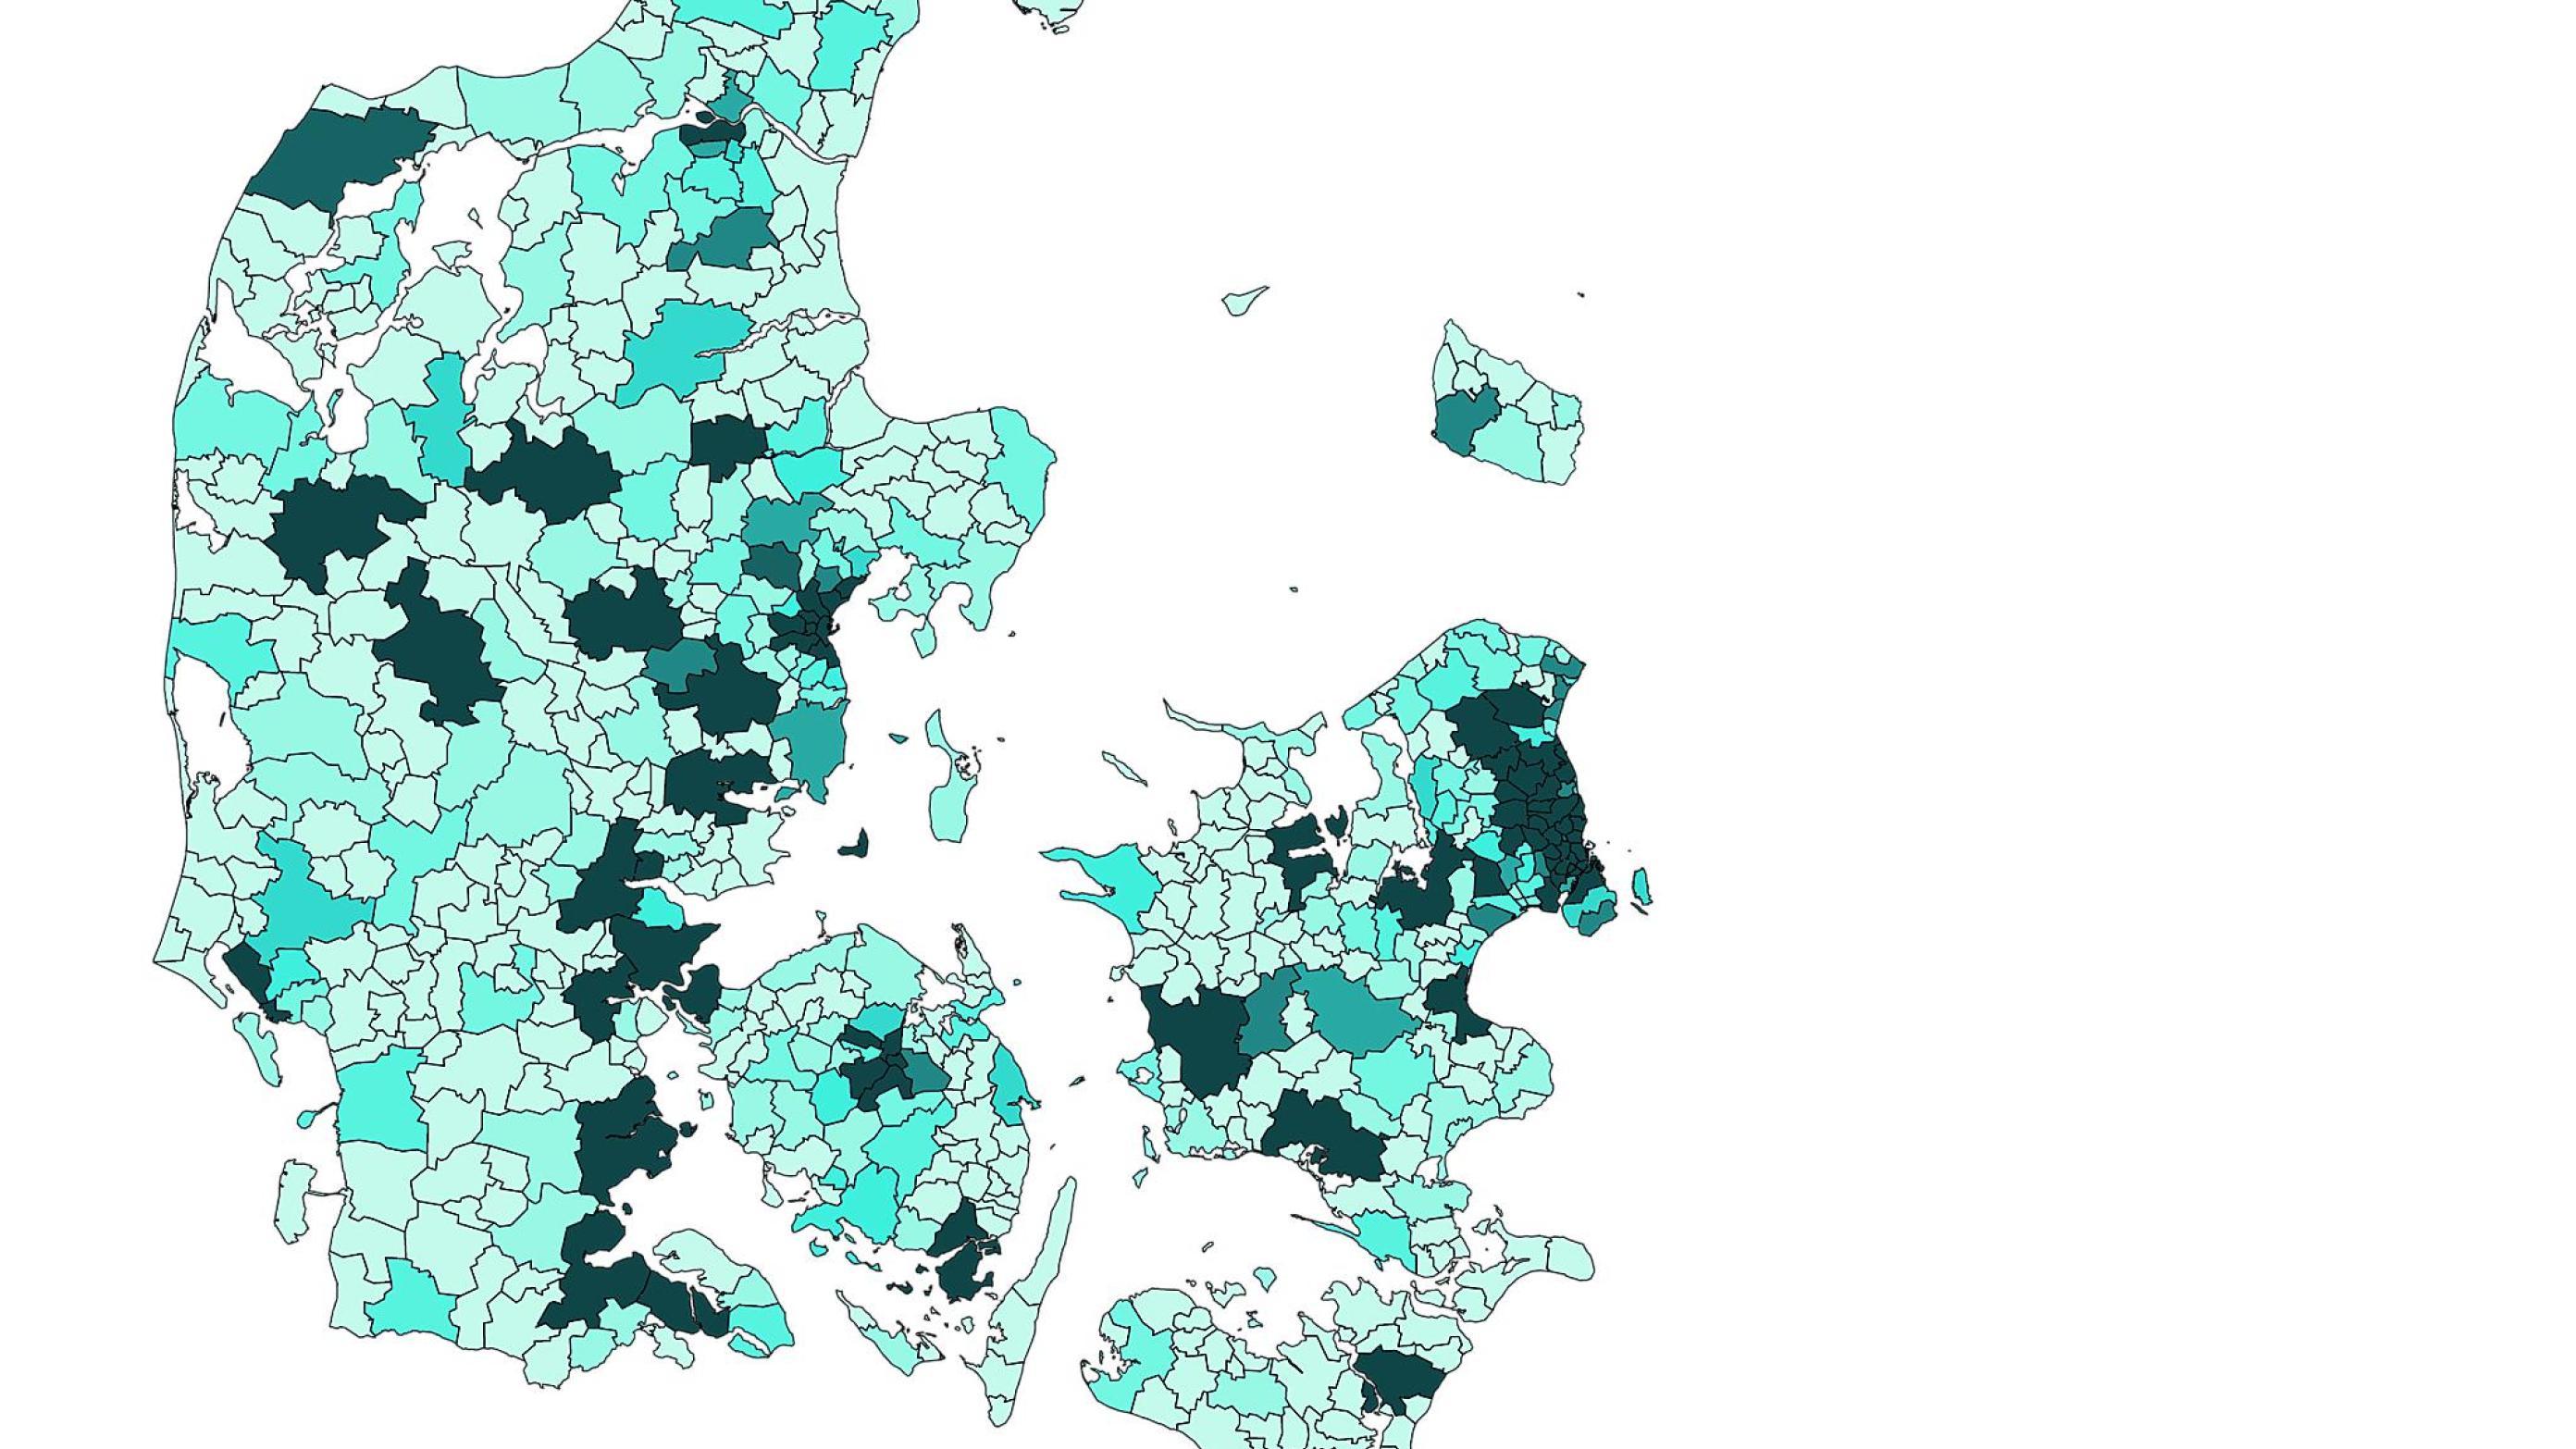 Kortet viser, hvor mange læger der bor i hvert postnummer. Jo mørkere farven er, des flere læger bor der. Nær sygehusbyerne bor særligt mange læger.